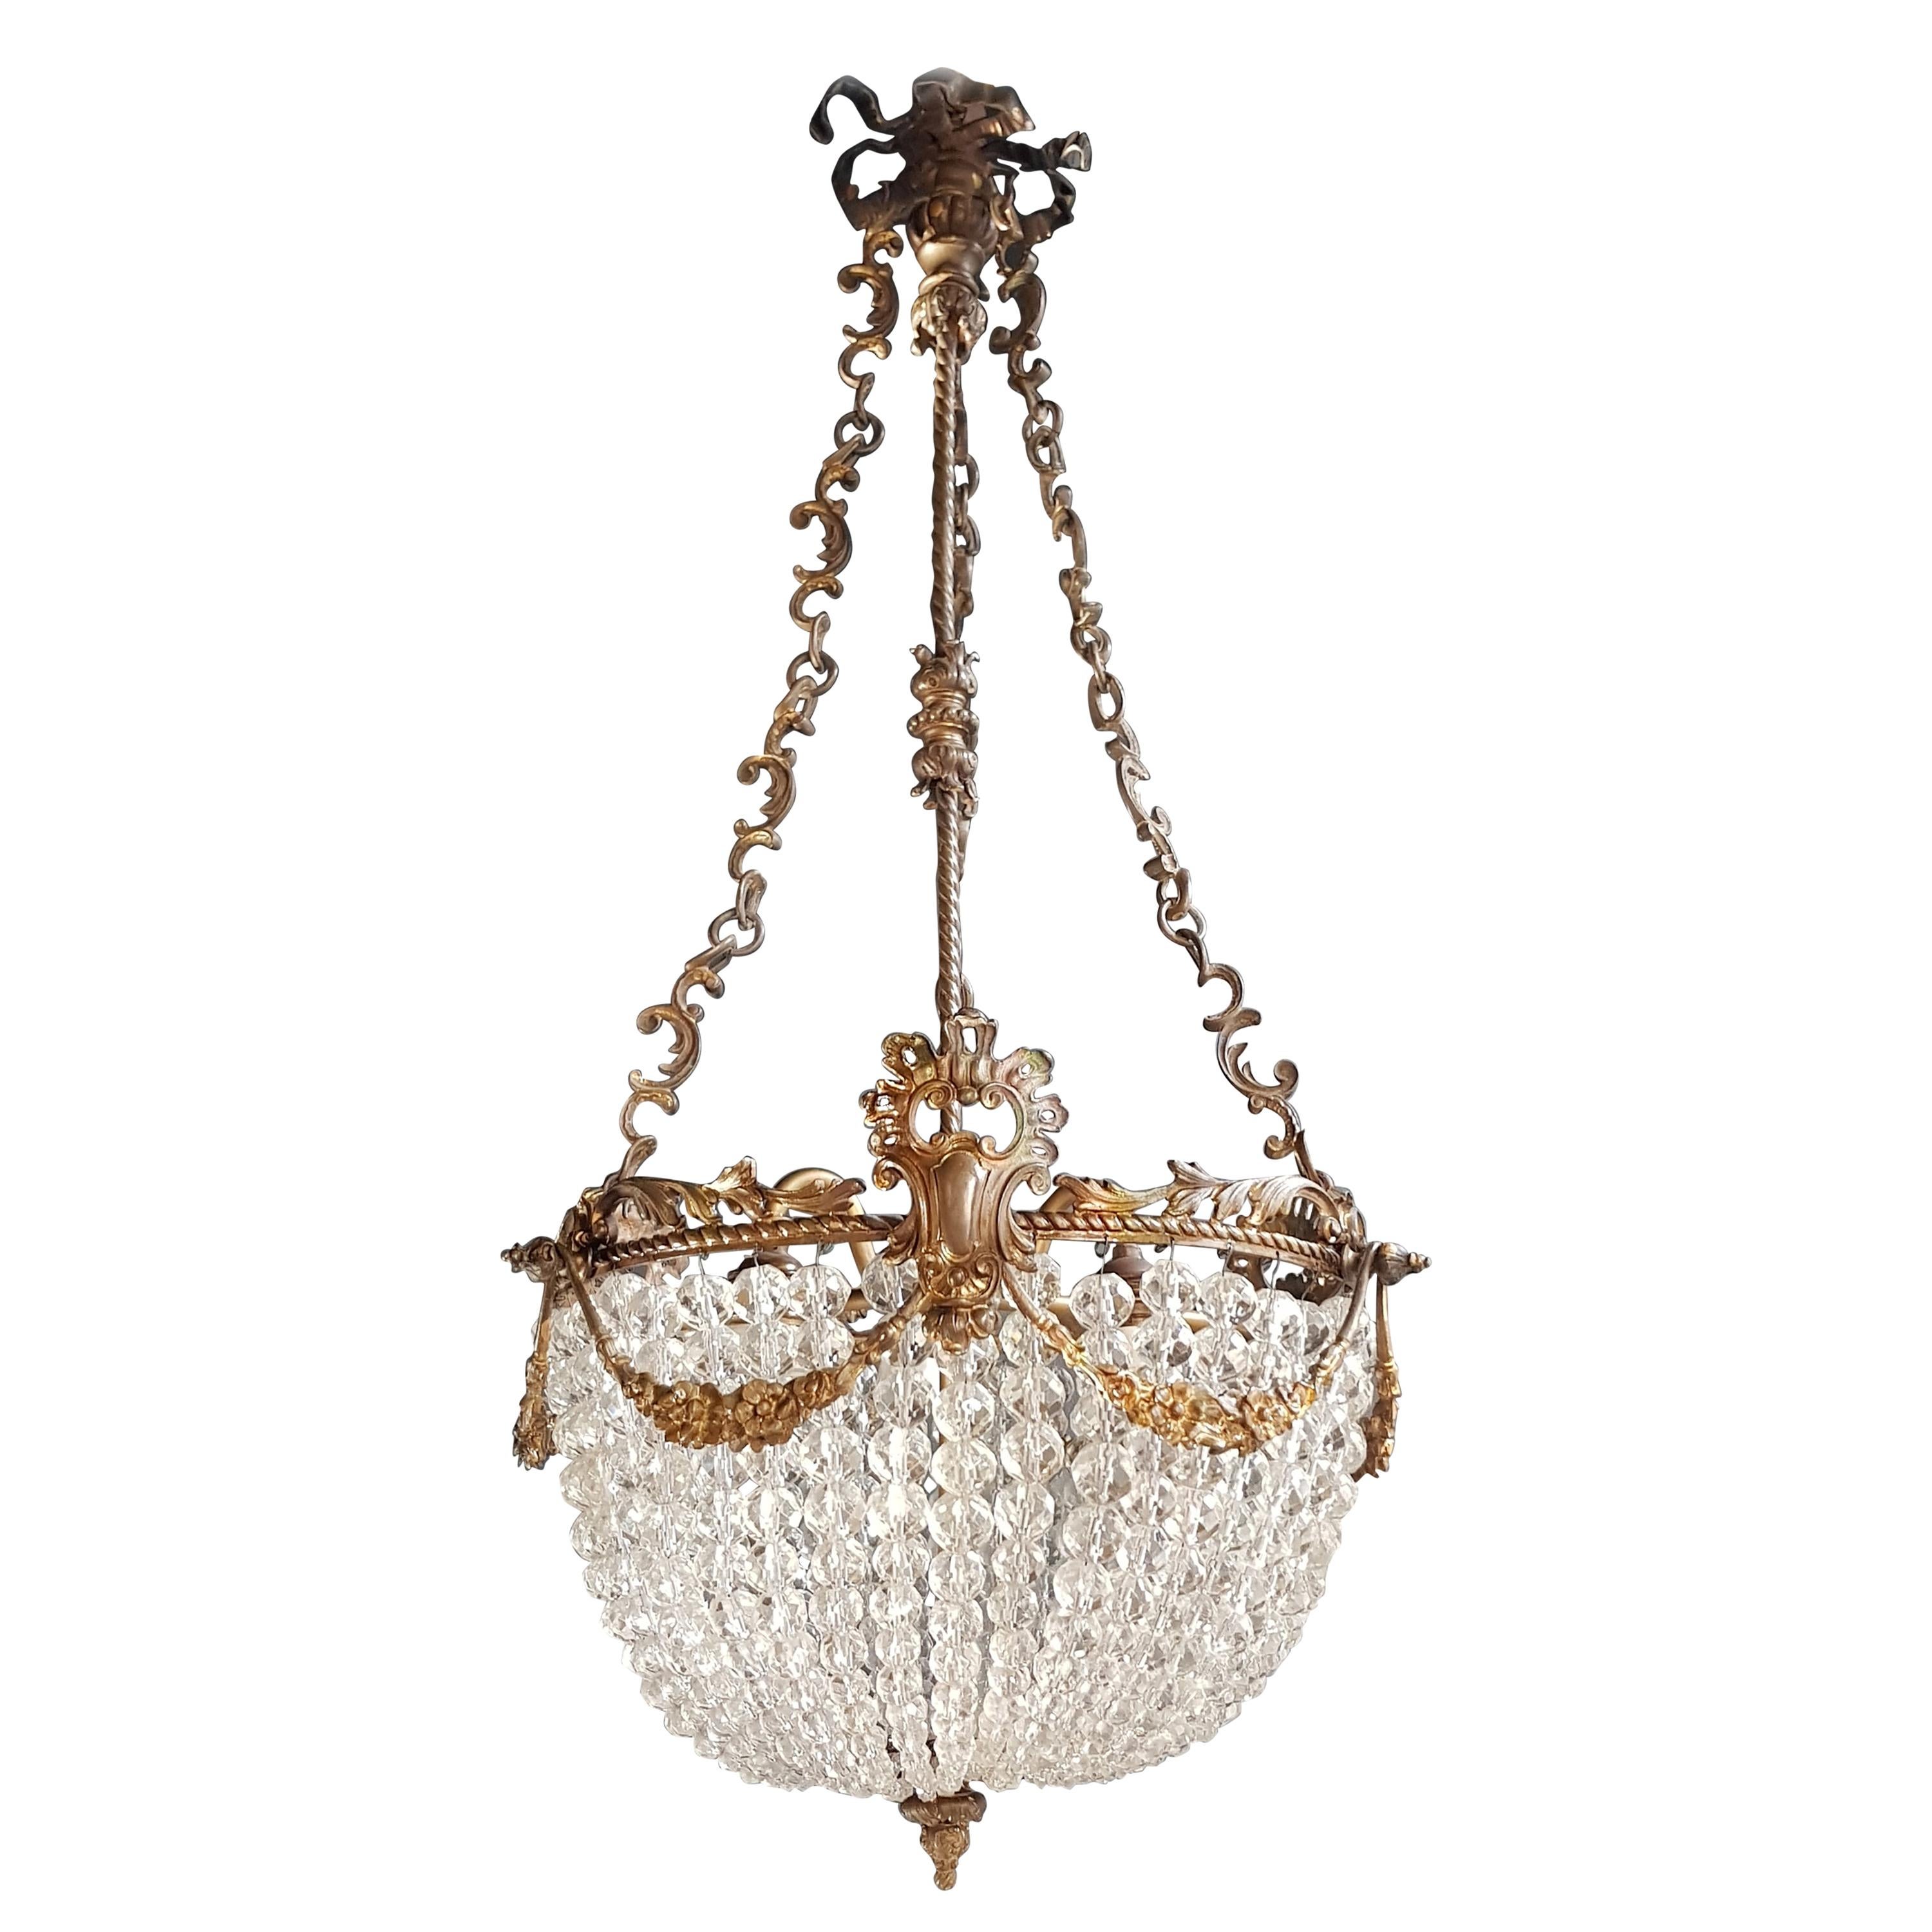 Beaded Crystal Basket Chandelier Antique Ceiling Lamp Lustre Art Nouveau